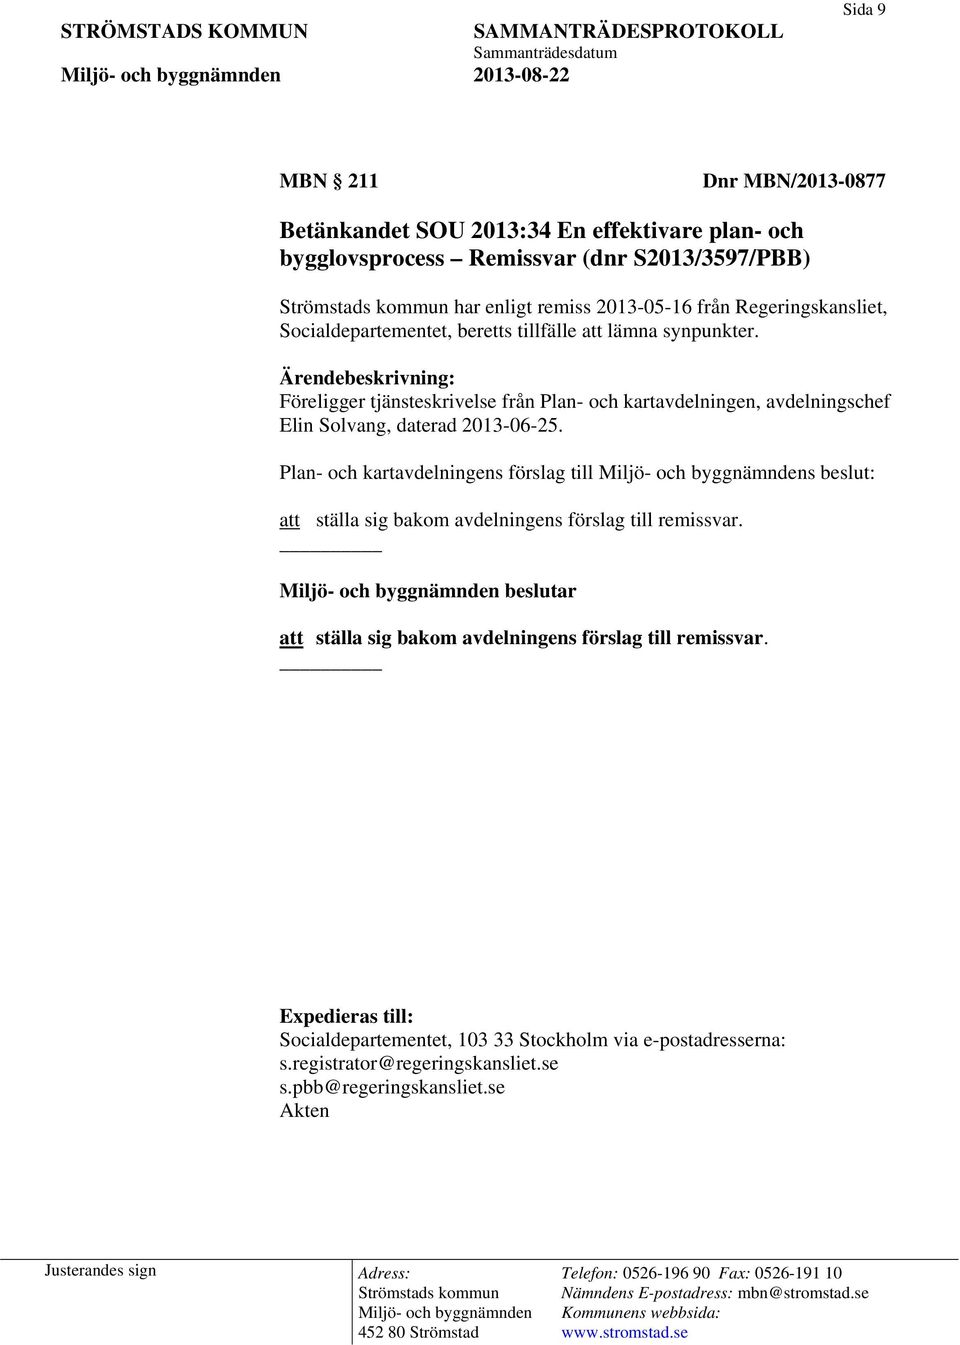 Ärendebeskrivning: Föreligger tjänsteskrivelse från Plan- och kartavdelningen, avdelningschef Elin Solvang, daterad 2013-06-25.